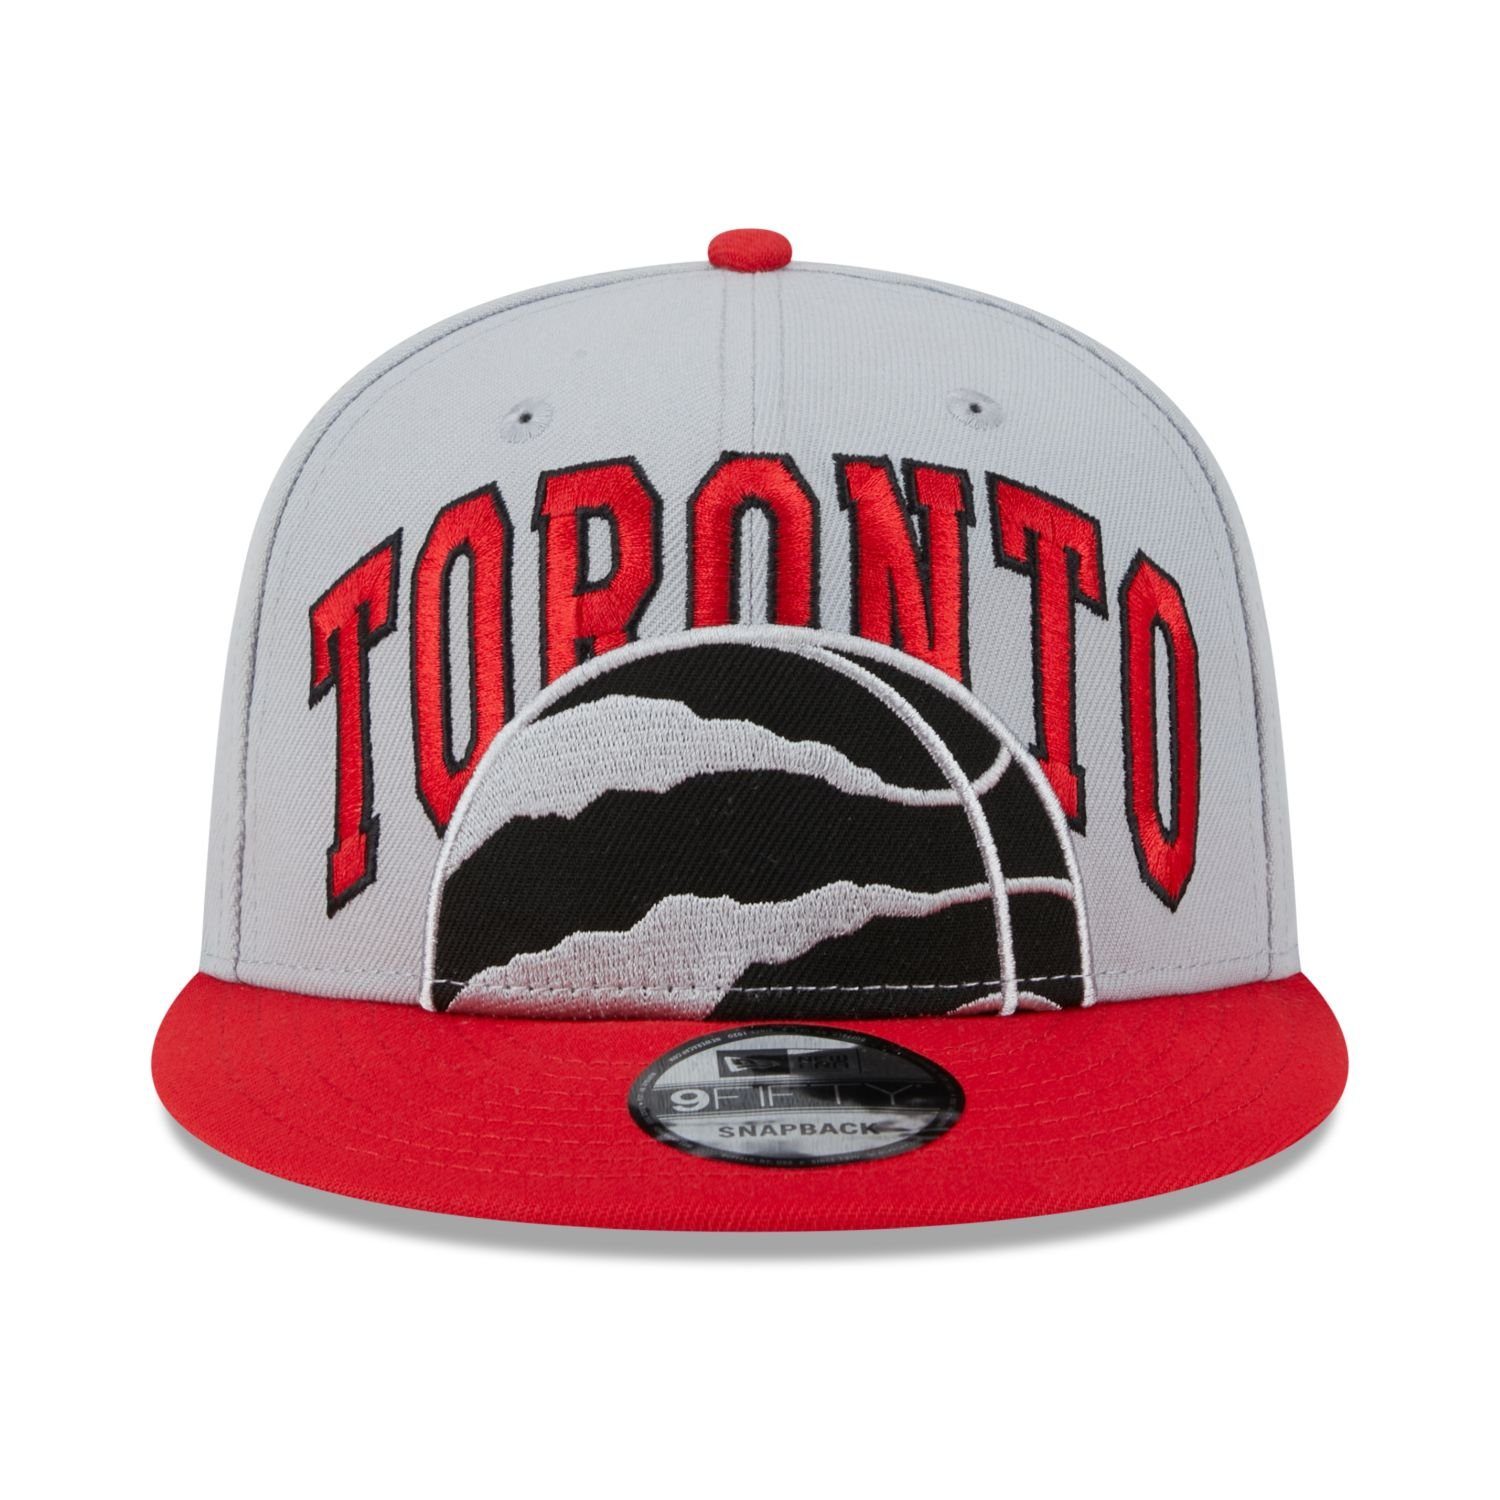 New Era Snapback Cap NBA Toronto TIPOFF 9FIFTY Raptors